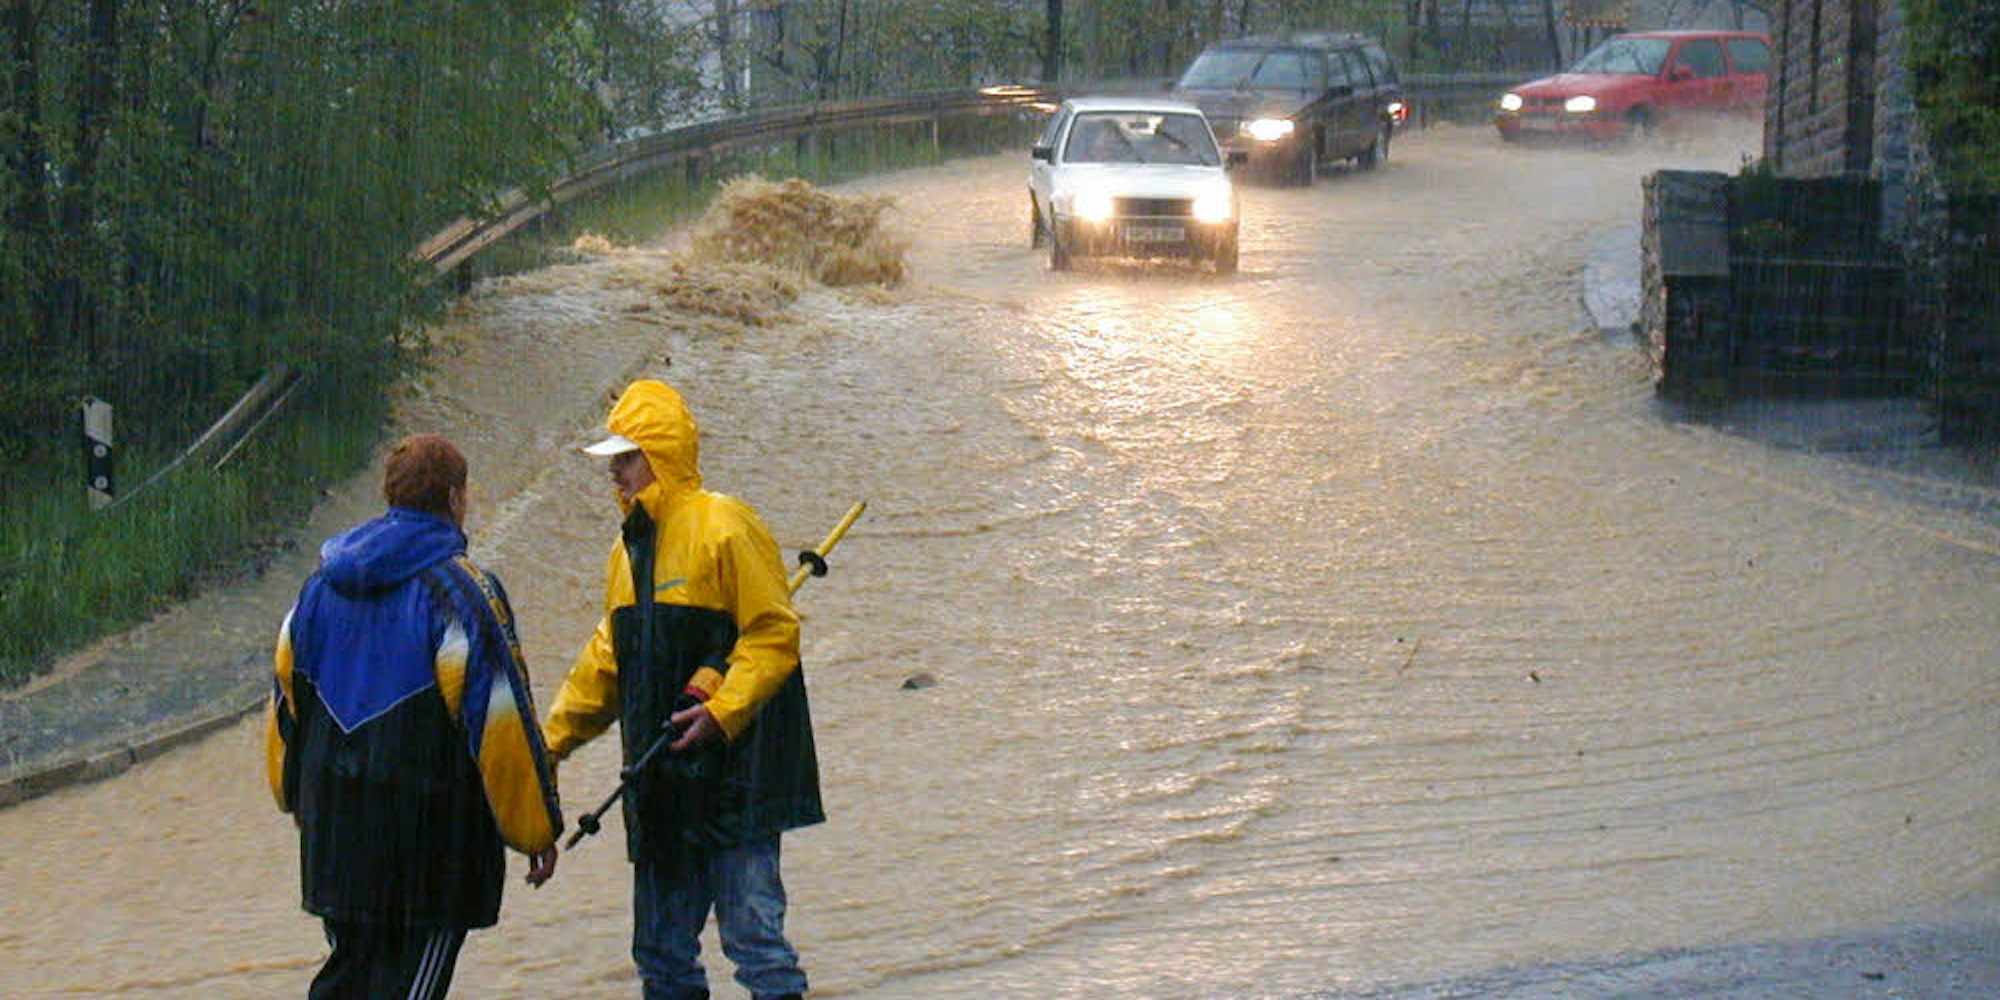 Am 3. Mai 2001 liefen Wassermassen von den Hängen herab und überfluteten  die Flusstäler. Bielstein gehörte zu den besonders schwer getroffenen Ortschaften. Diese Bilder entstanden an der Einmündung der Bantenberger auf die Bielsteiner Straße.